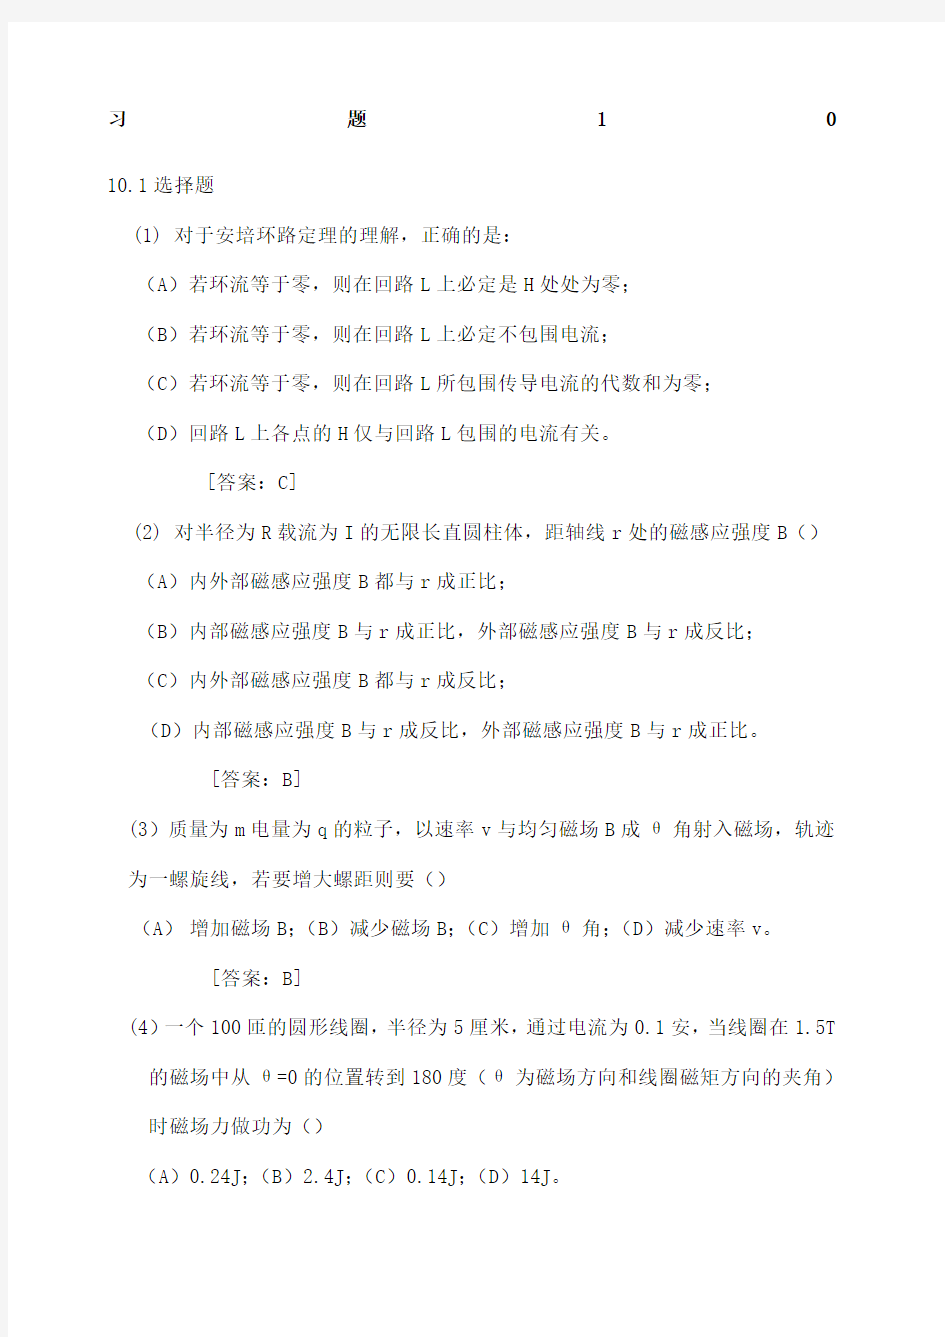 大学物理学 (第3版.修订版) 北京邮电大学出版社 下册  第十章 习题10答案